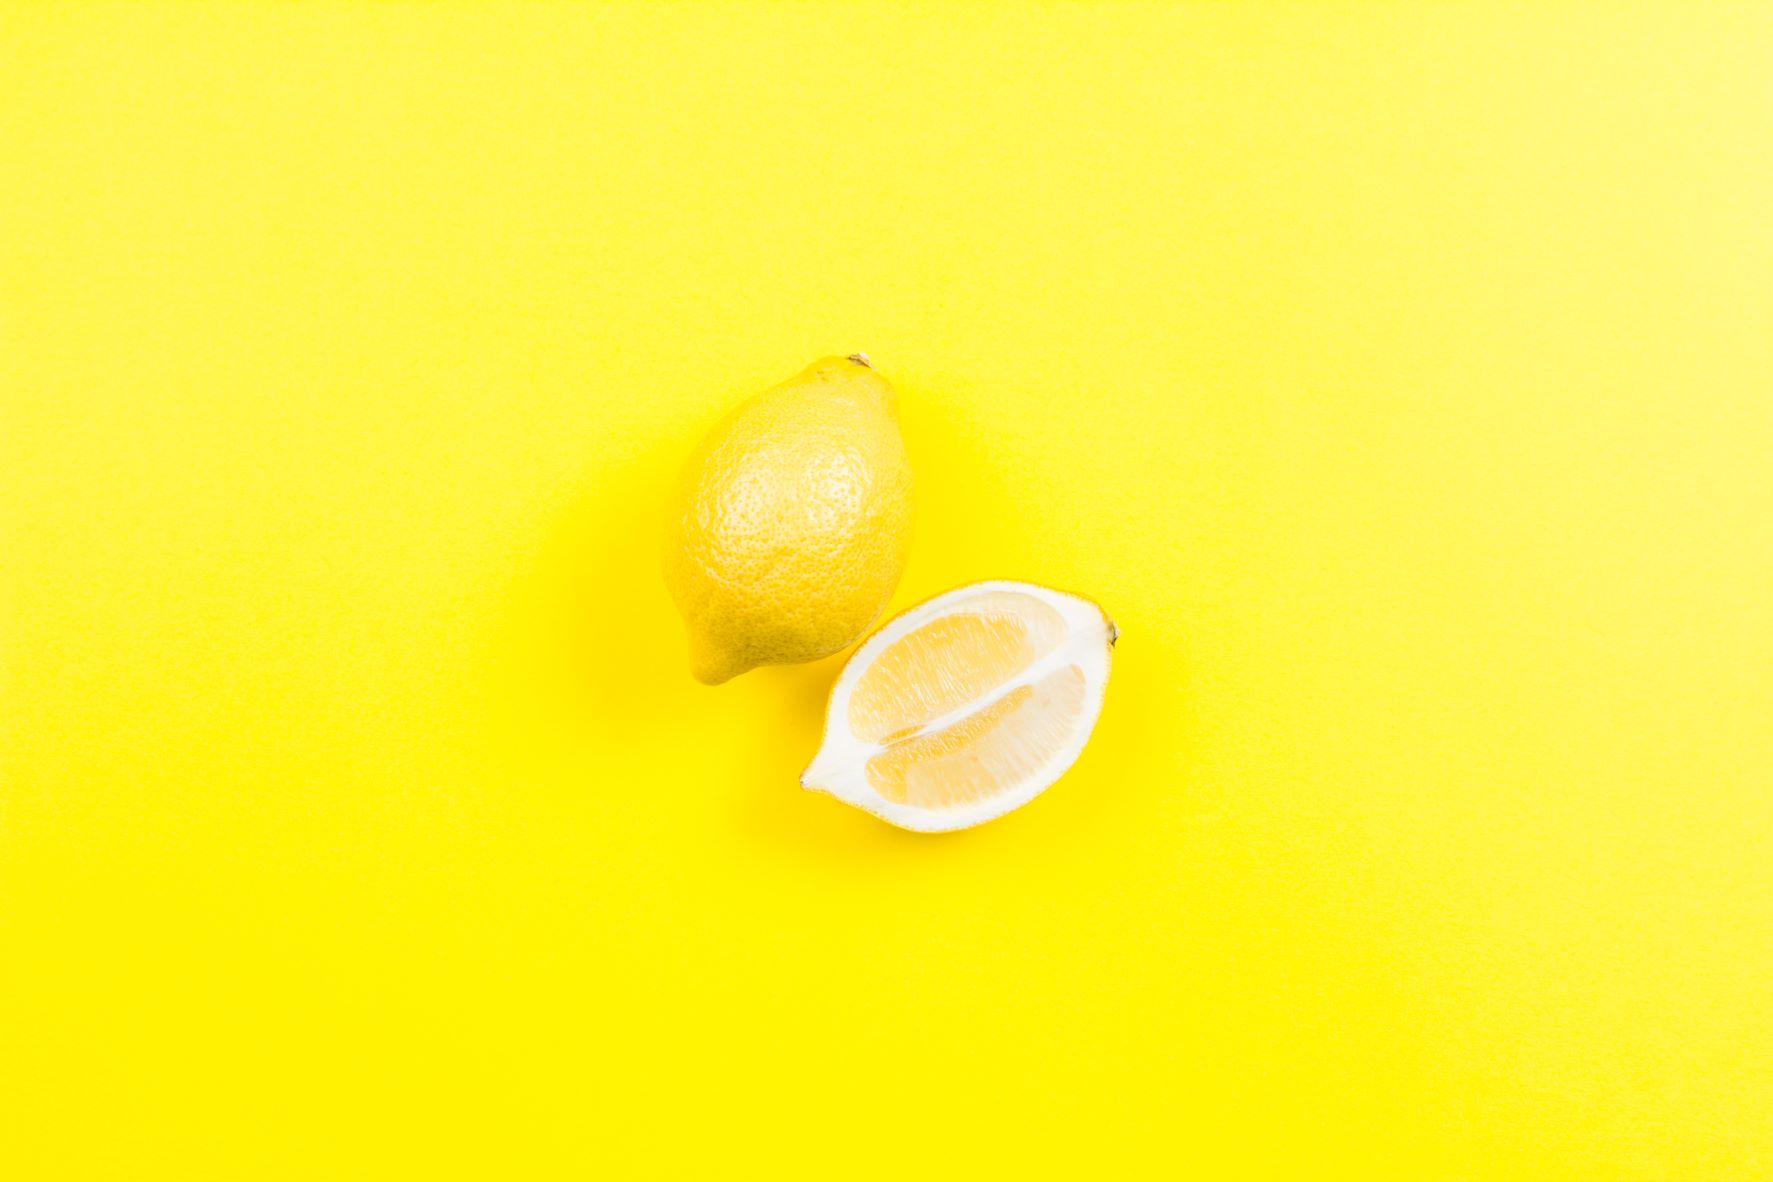 米津玄師さん「Lemon」を精神科医が分析した。